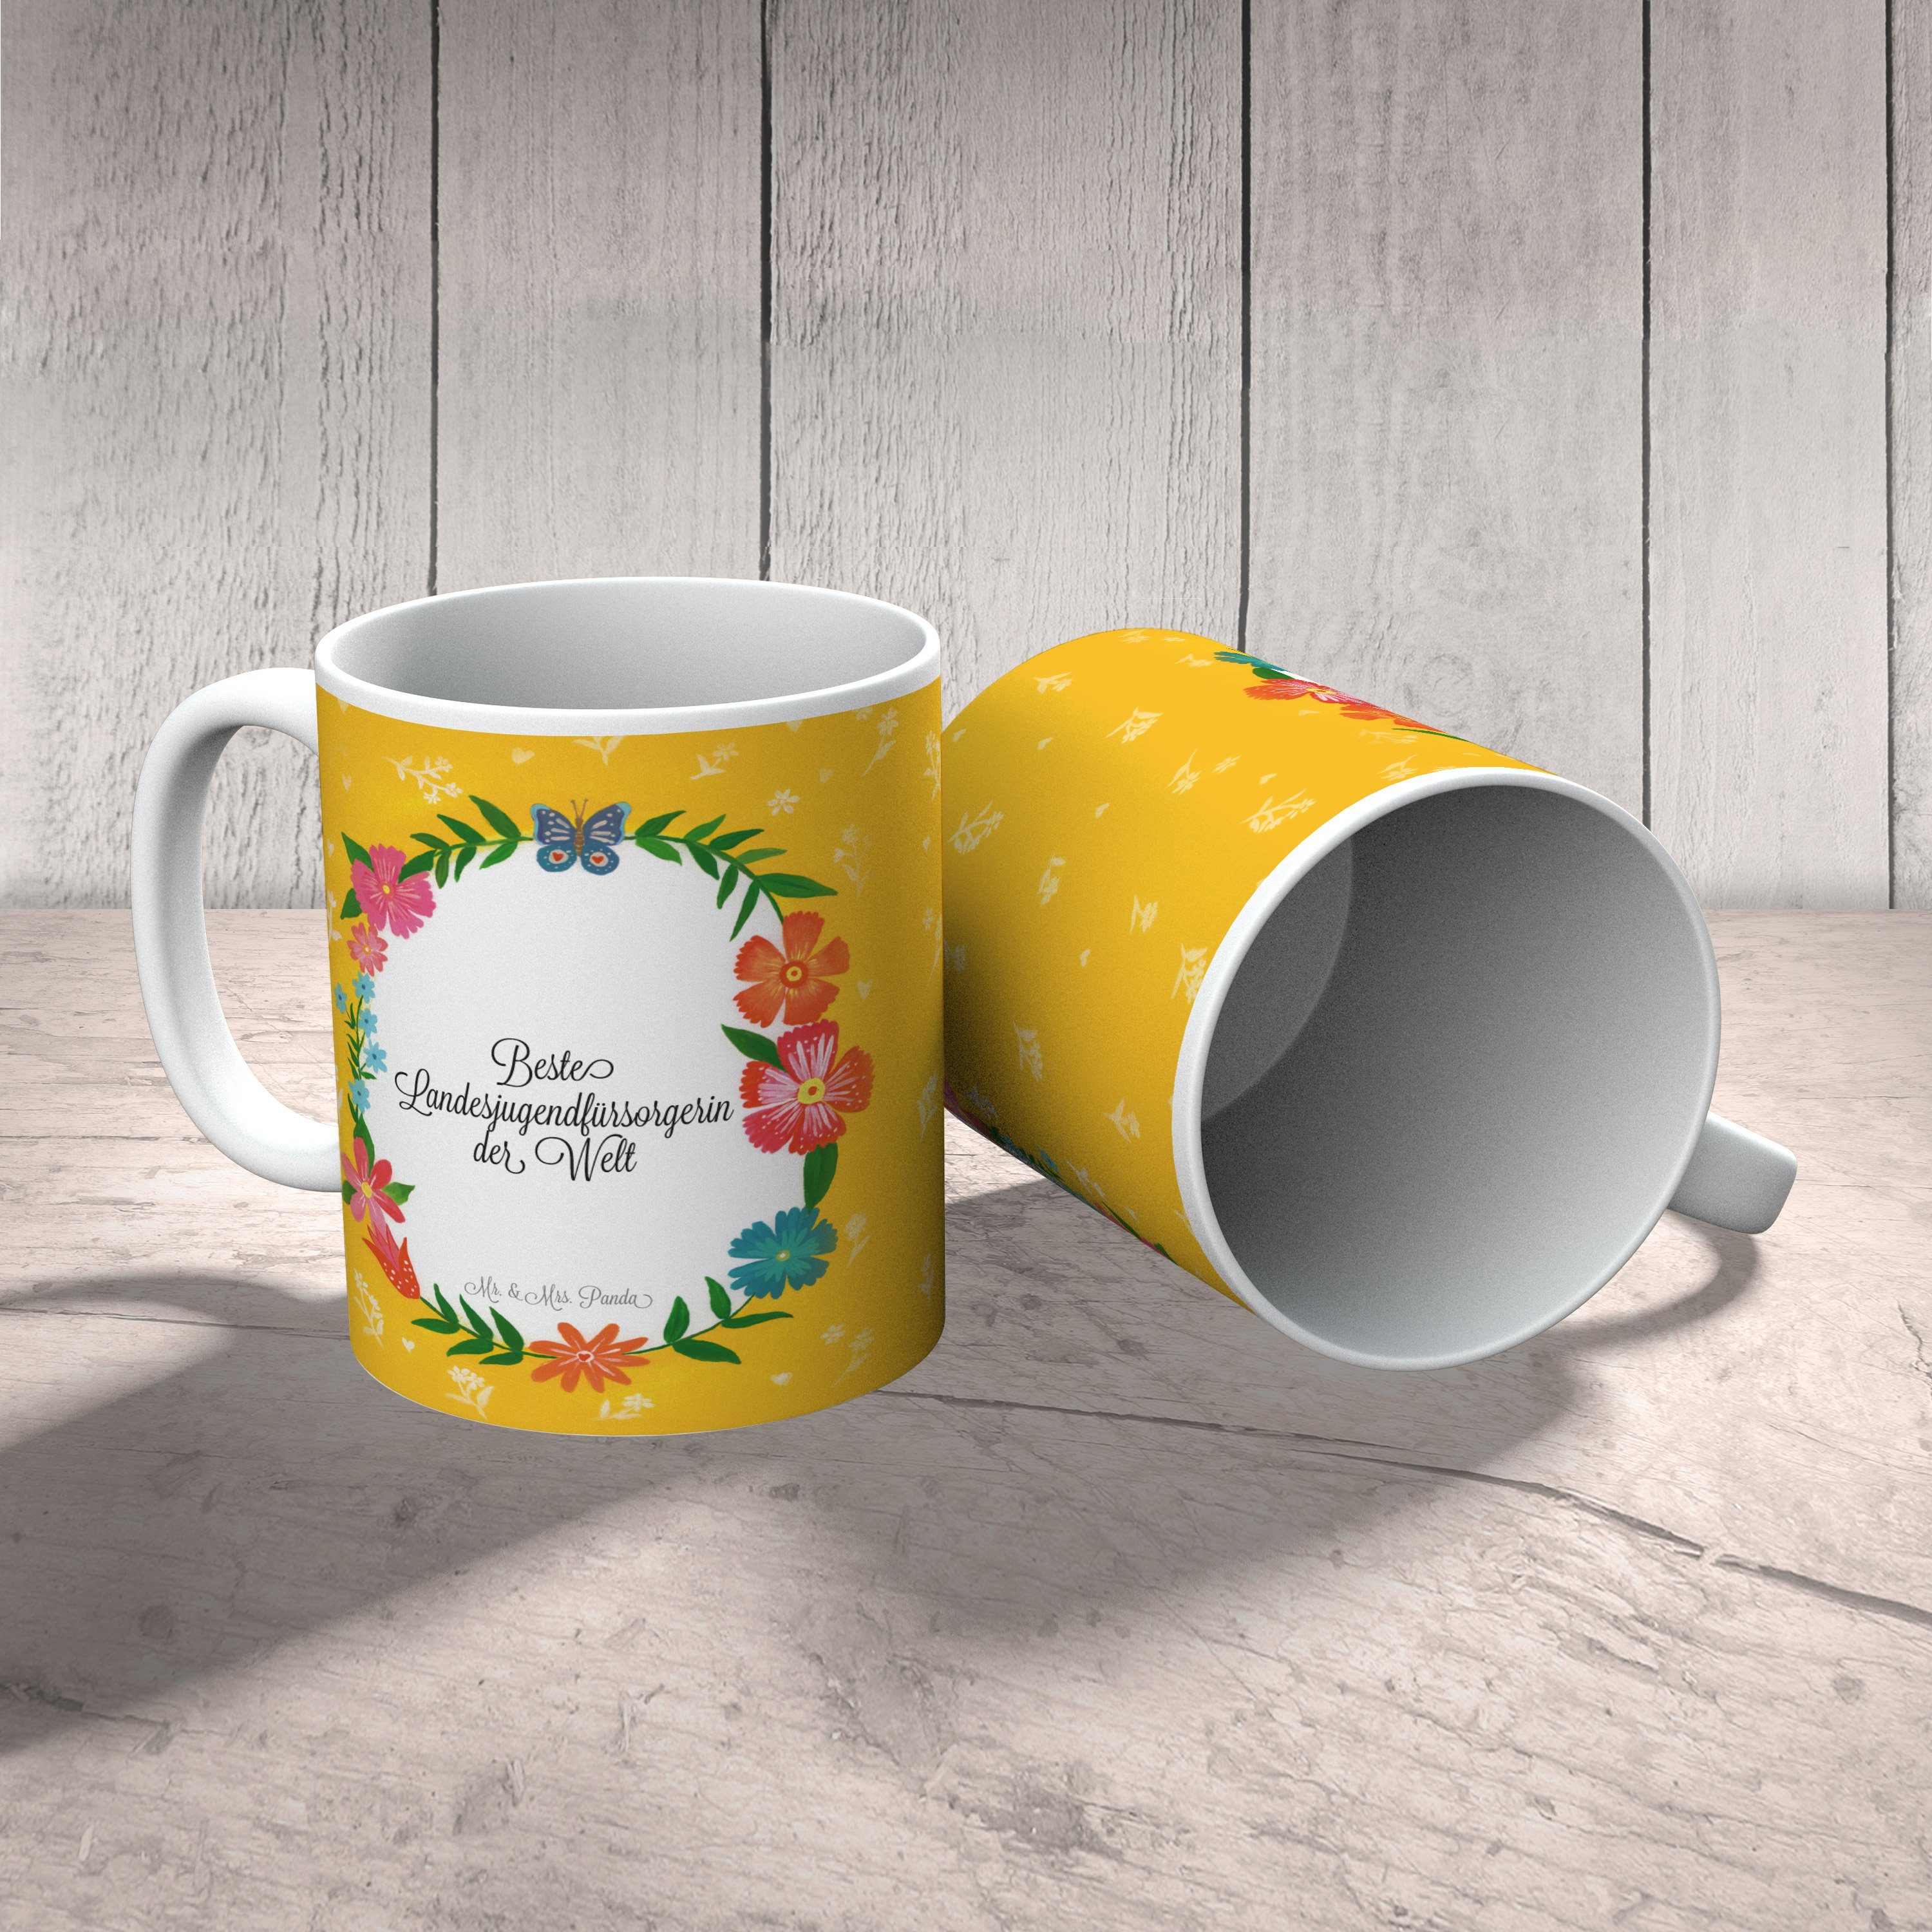 Mr. & Mrs. Panda Tasse Geschenk, - Sprüch, Landesjugendfürsorgerin Tasse Beruf, Tasse Keramik Motive